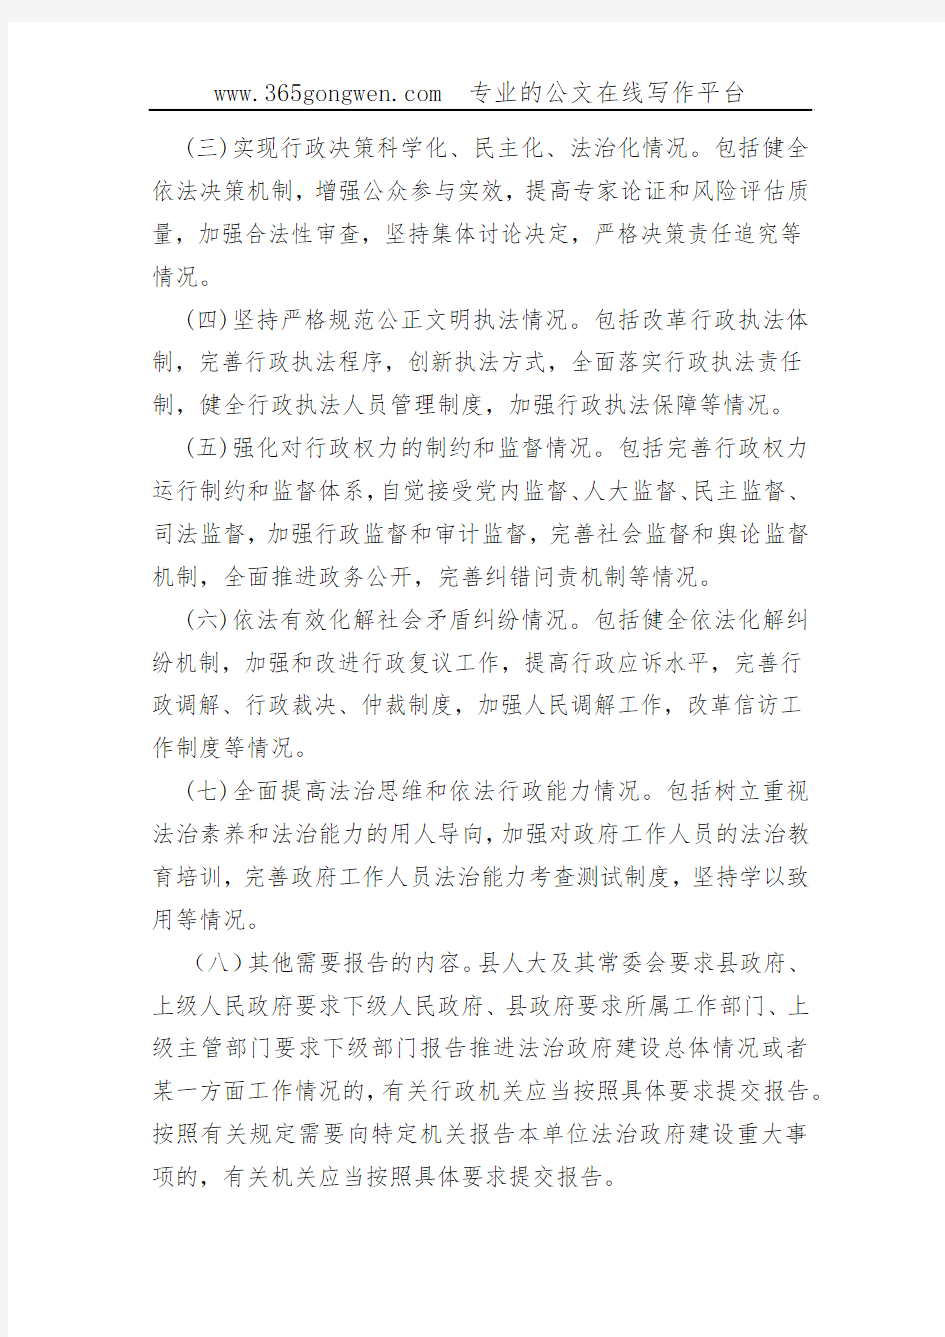 【法制制度】鸡泽县法治政府建设情况报告制度